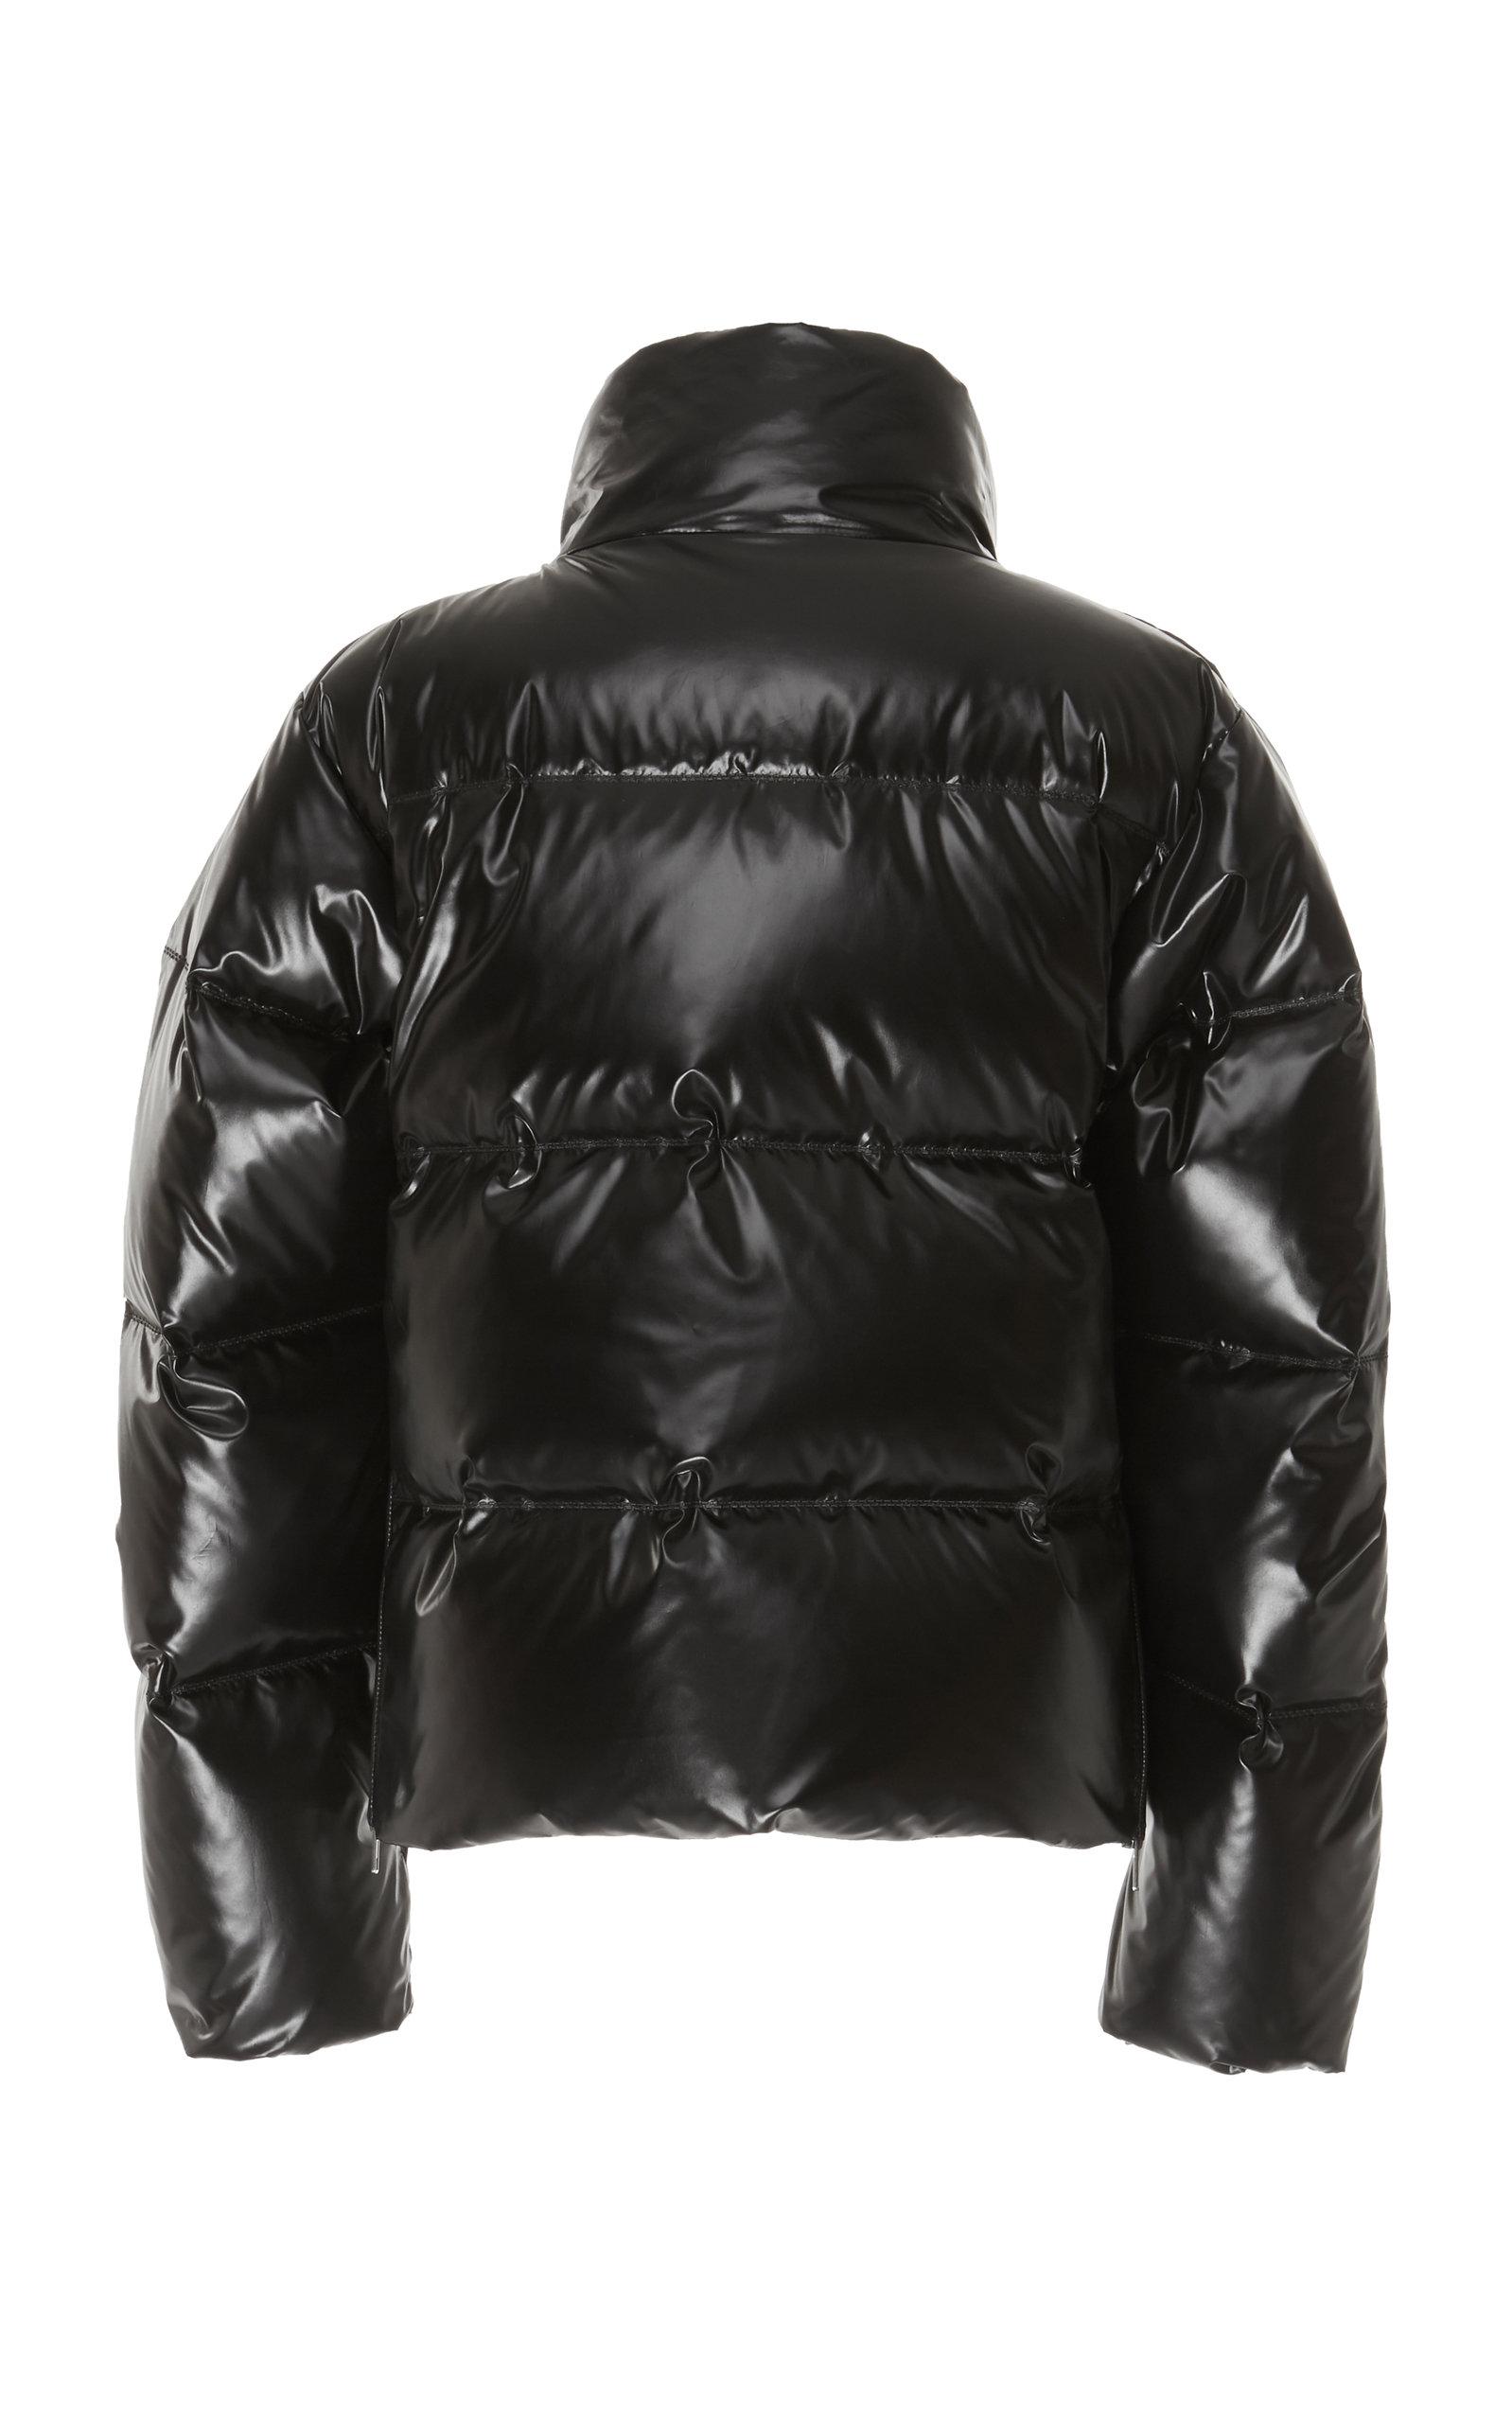 Maison Margiela Coated Nylon Puffer Jacket in Black for Men - Lyst